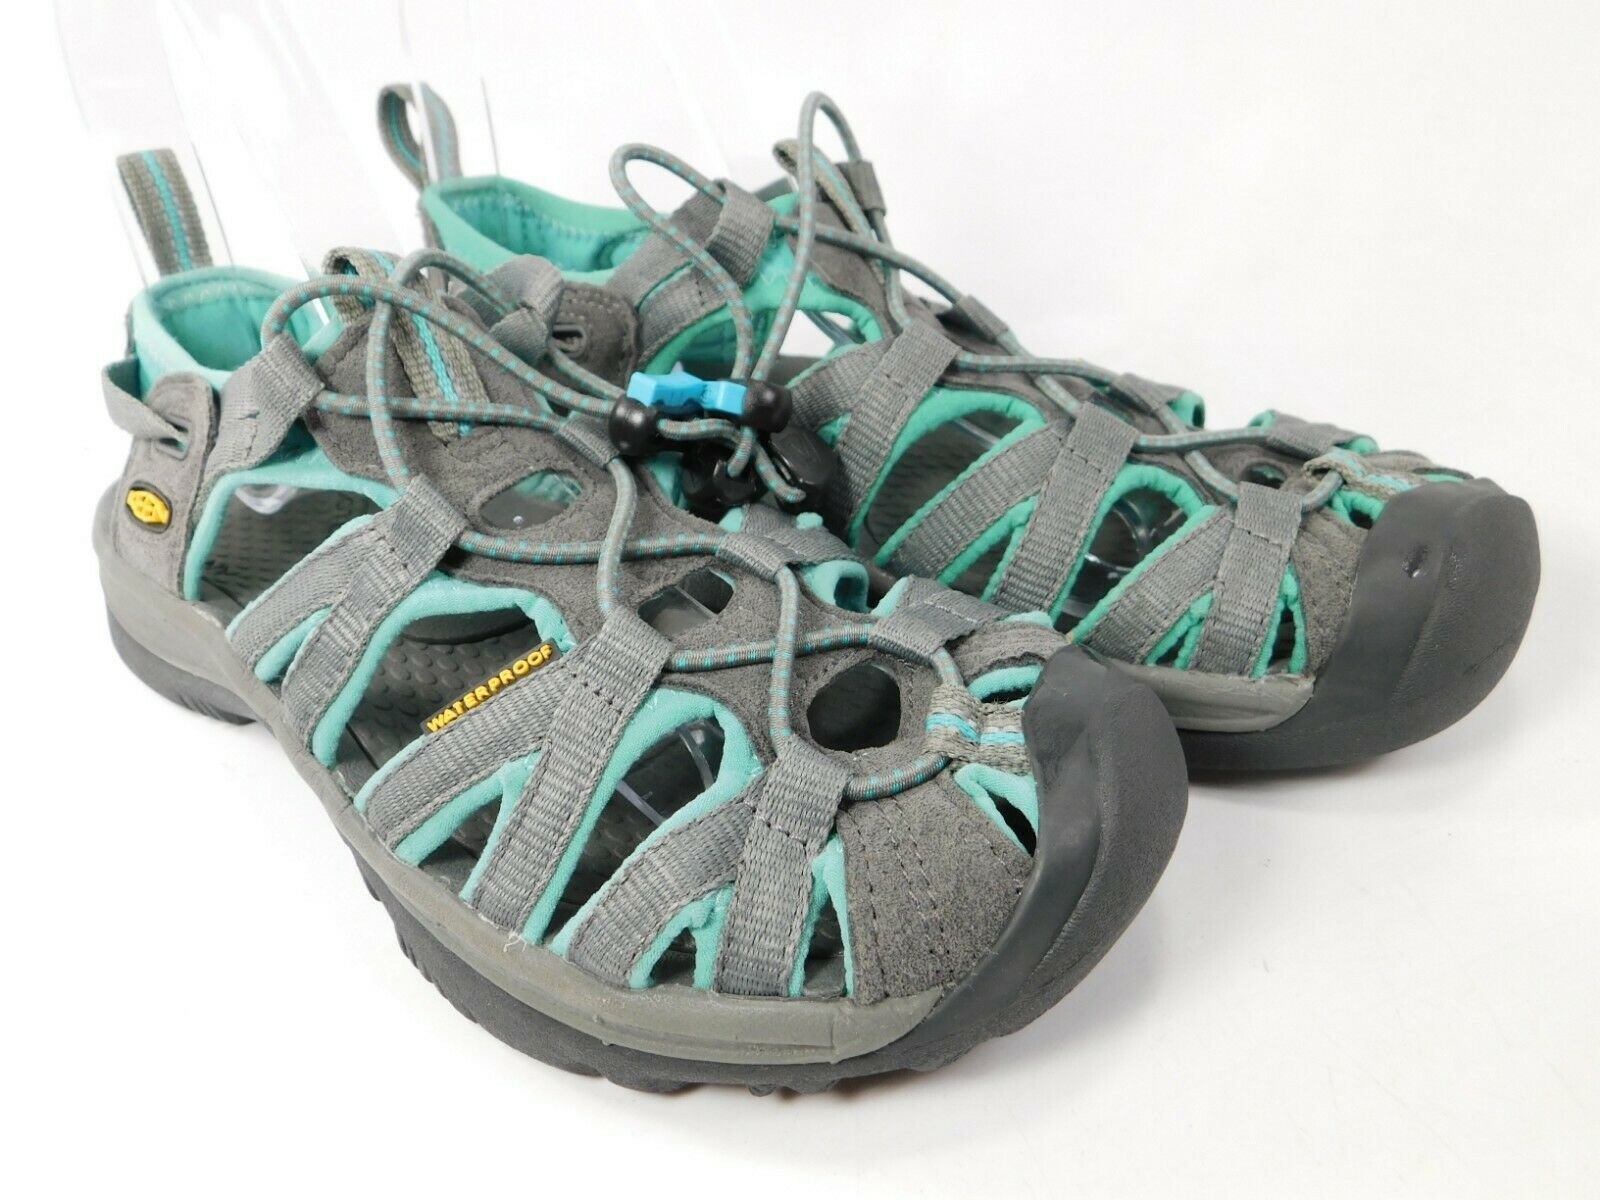 Keen Whisper Sz 6.5 M (B) EU 37 Women's Sport Sandals Shoes Light Gray ...